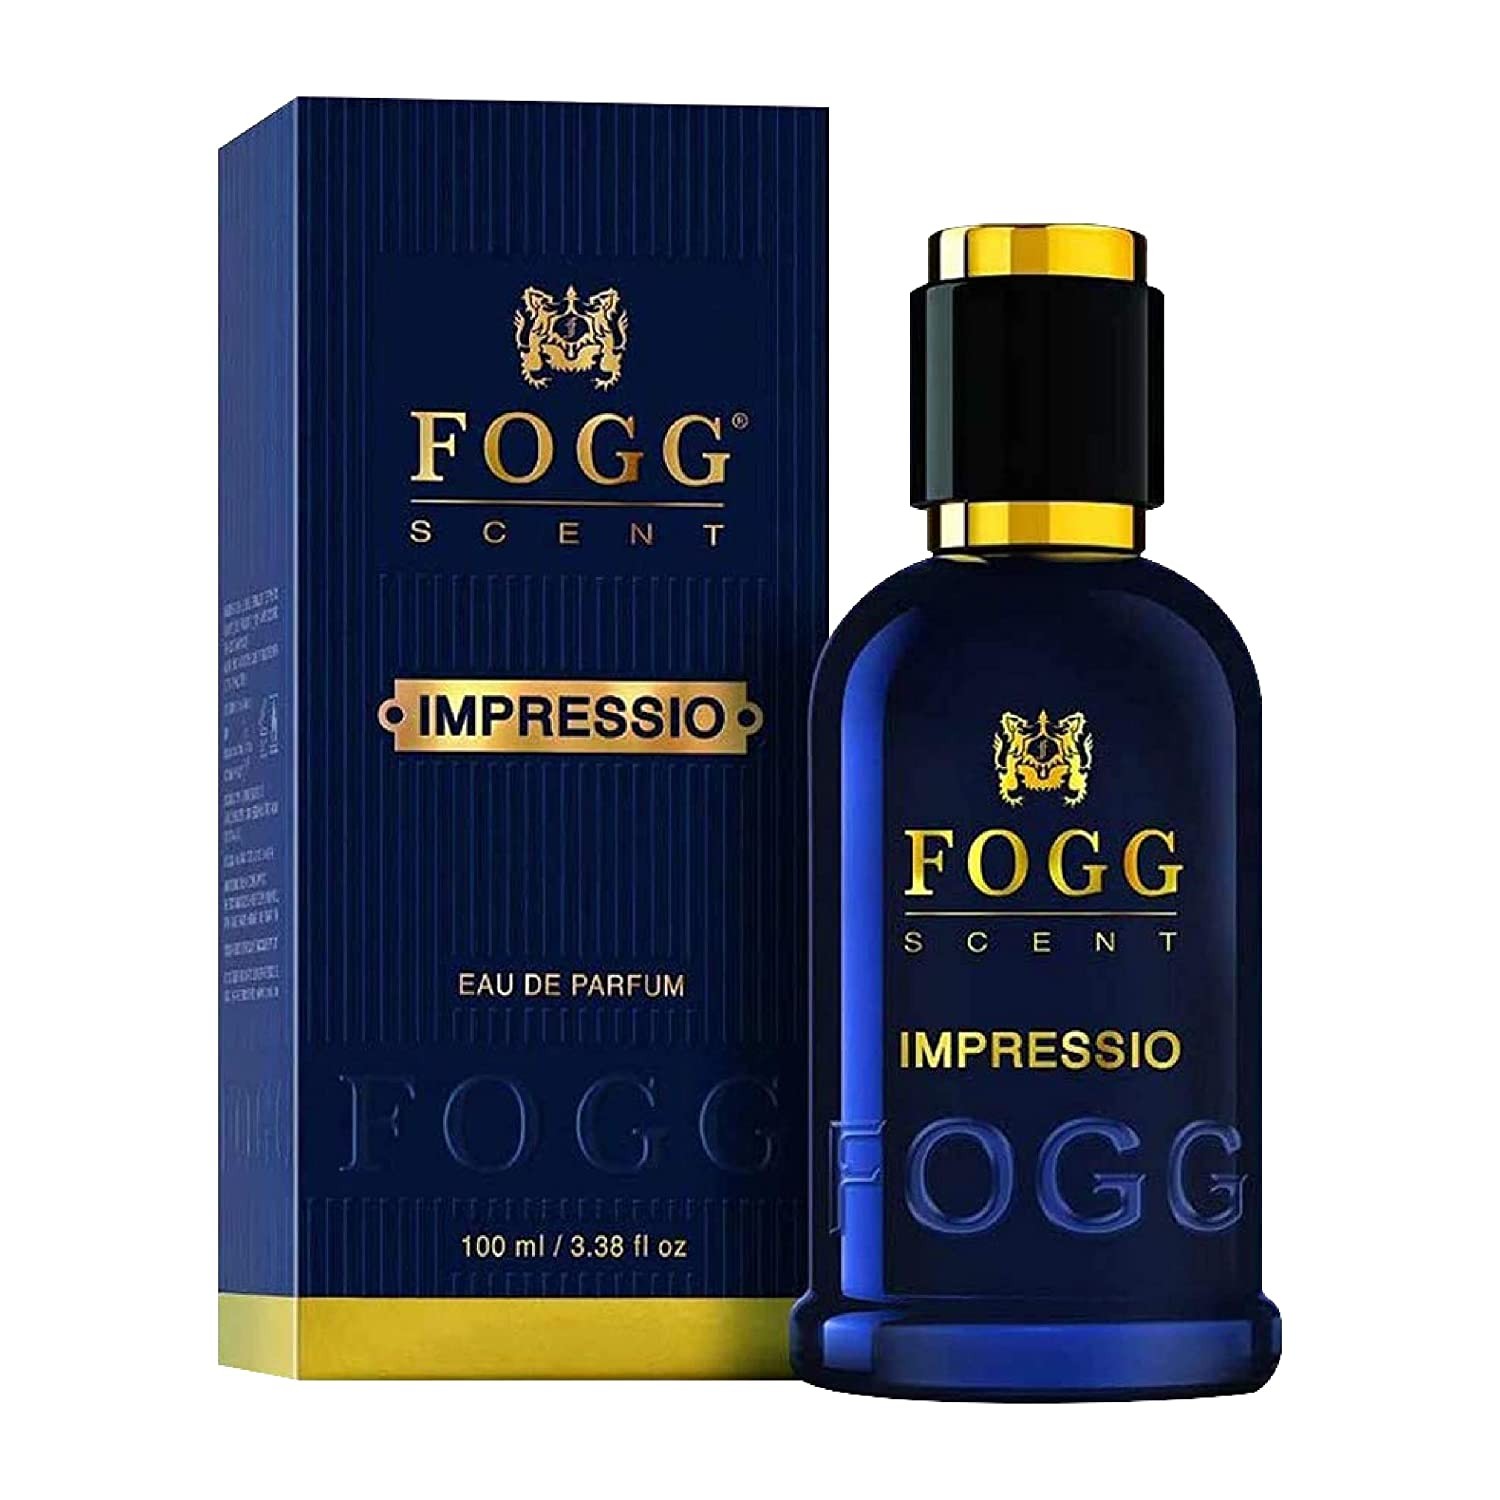 Fogg Impressio Scent For Men, 100ml